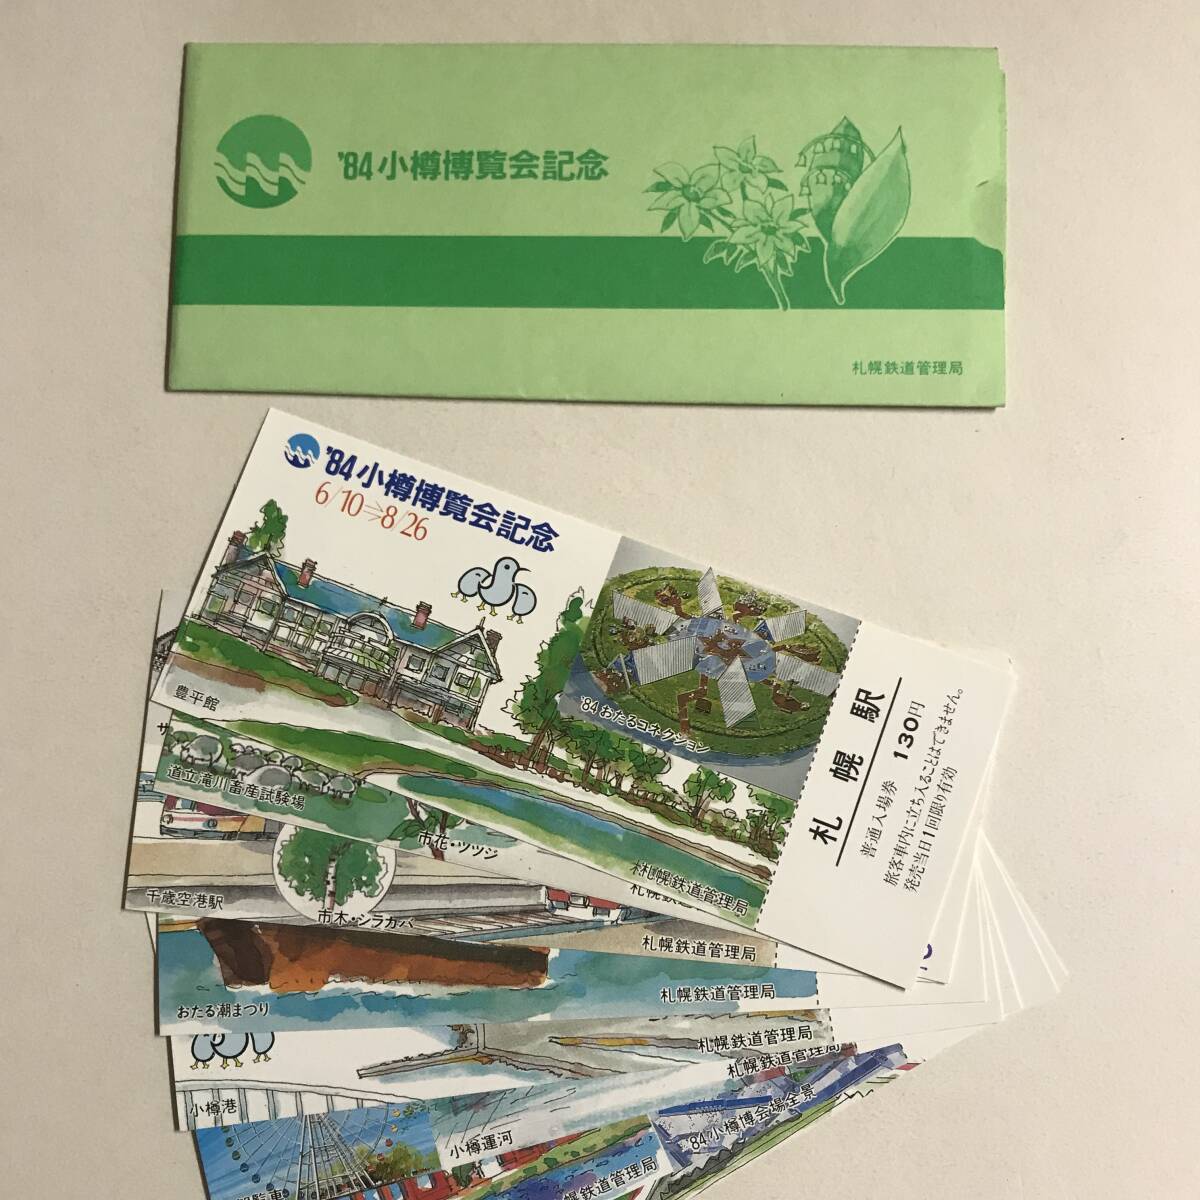 1984年 小樽博覧会記念 / 札幌鉄道管理局 入場券 未使用 @S-A-B_画像1